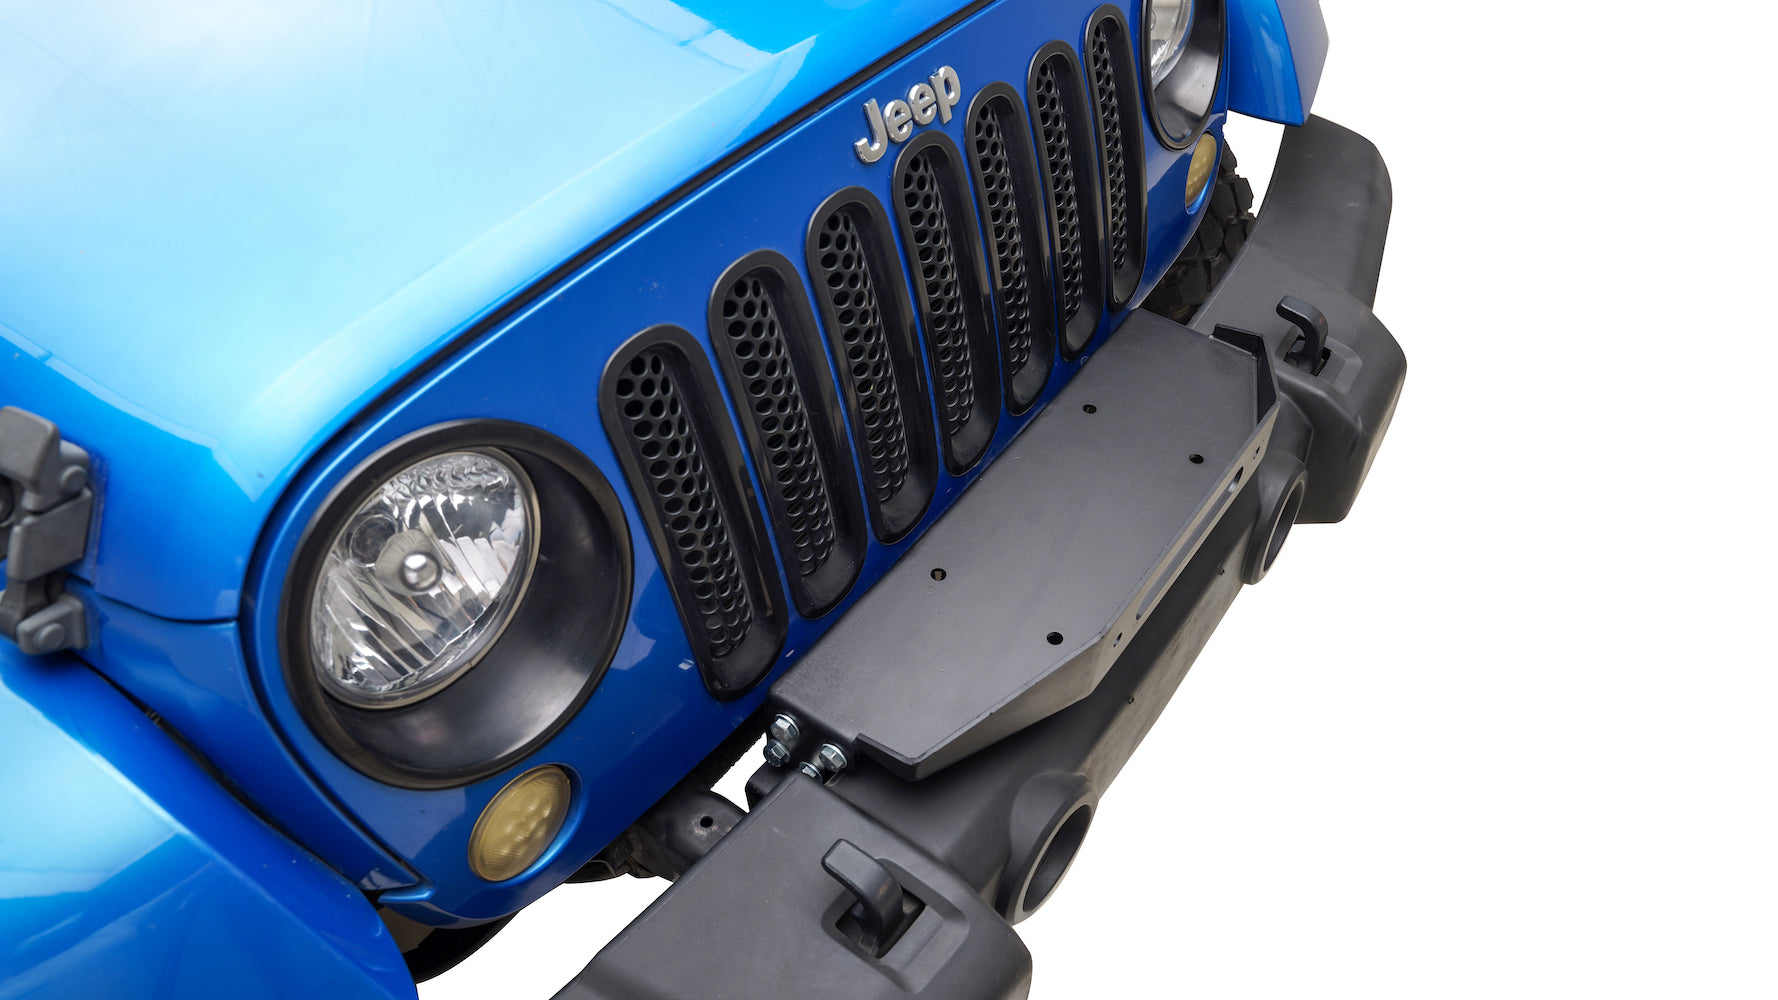 07-18 Jeep Wrangler JK External Winch Plate (81-10104)